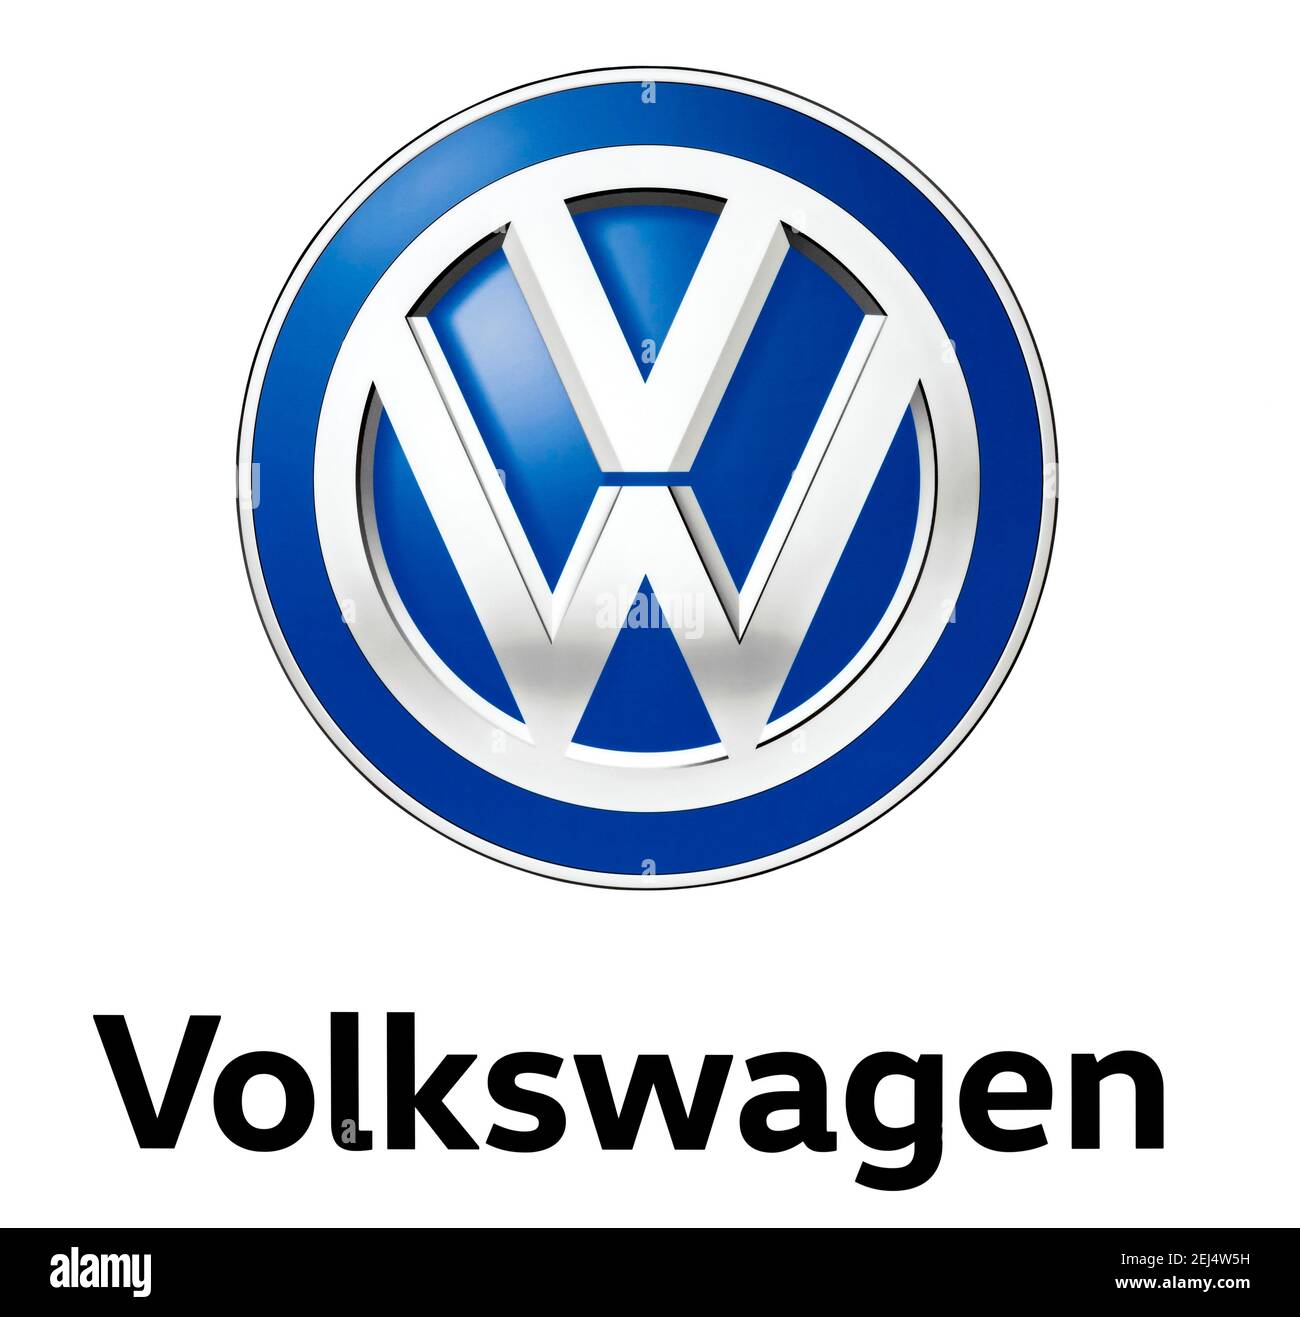 Logo de la marque automobile VW, Volkswagen, espace libre sur fond blanc Banque D'Images